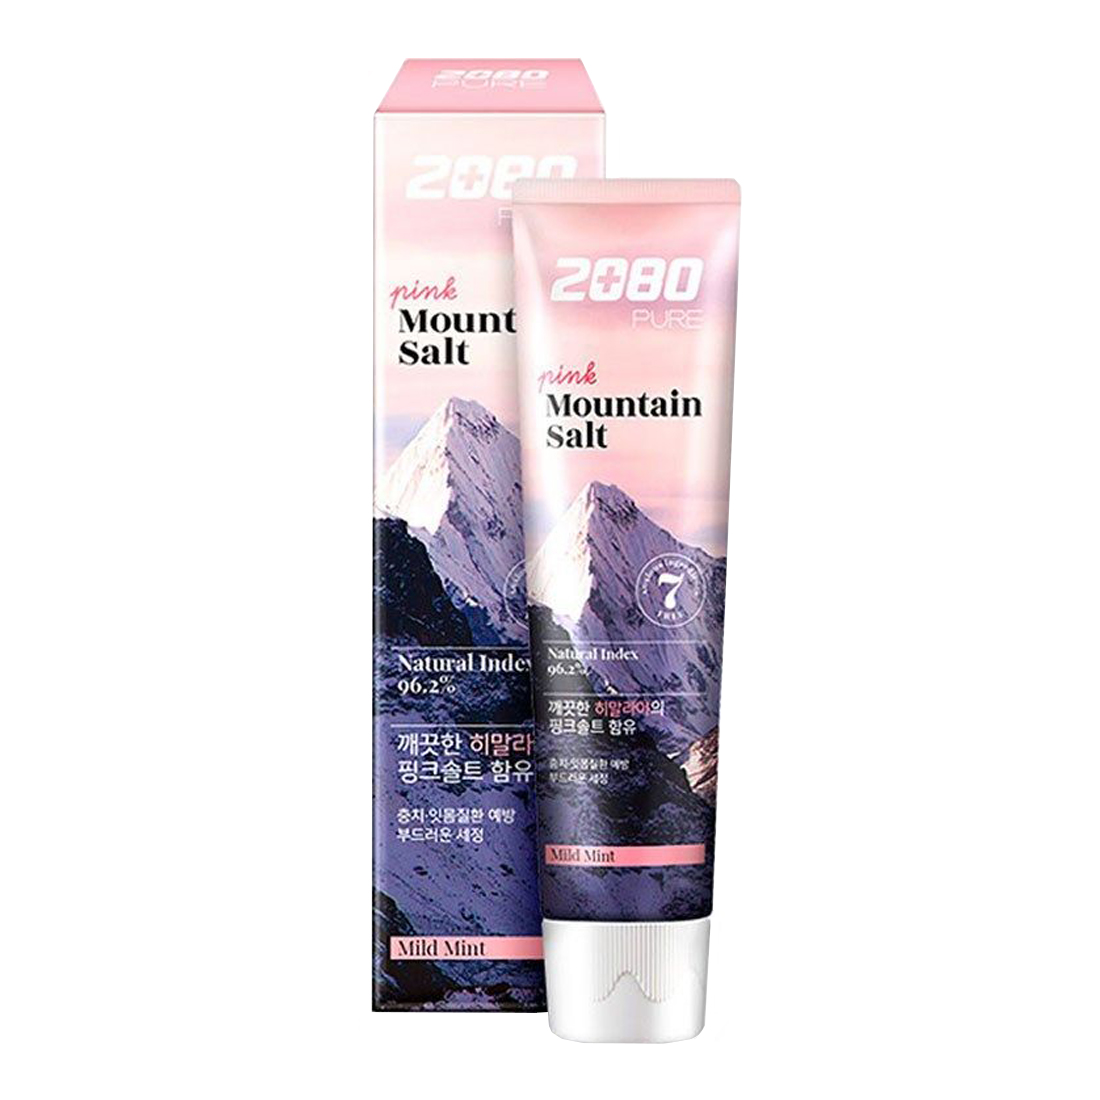 Зубная паста Гималайская соль розовая, 120 г, DC 2080